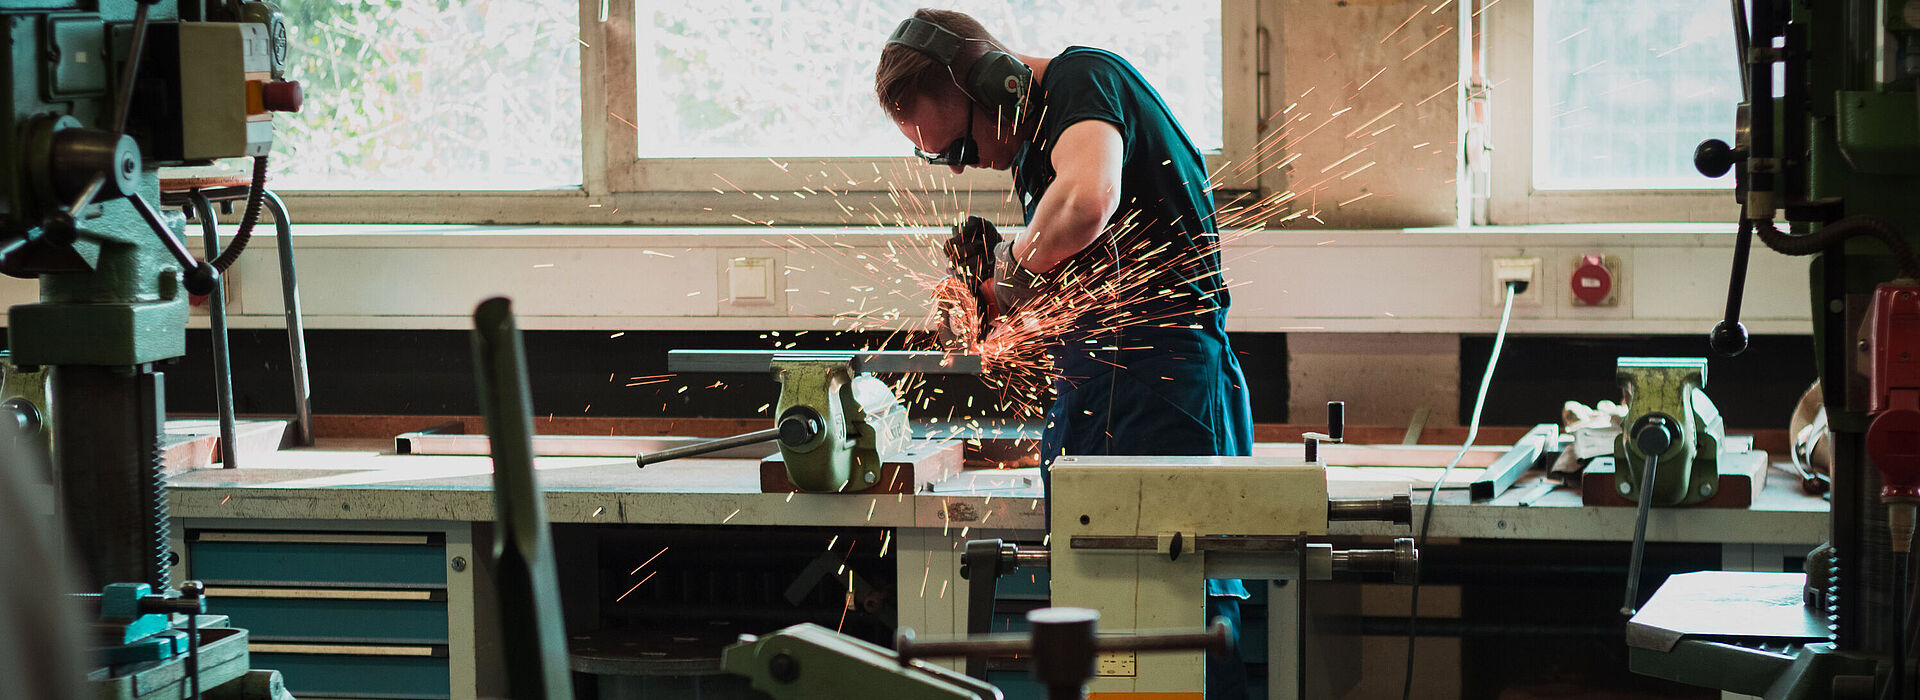 Ein junger Mann arbeitet in einer Werkstatt mit einer Schleifmaschine